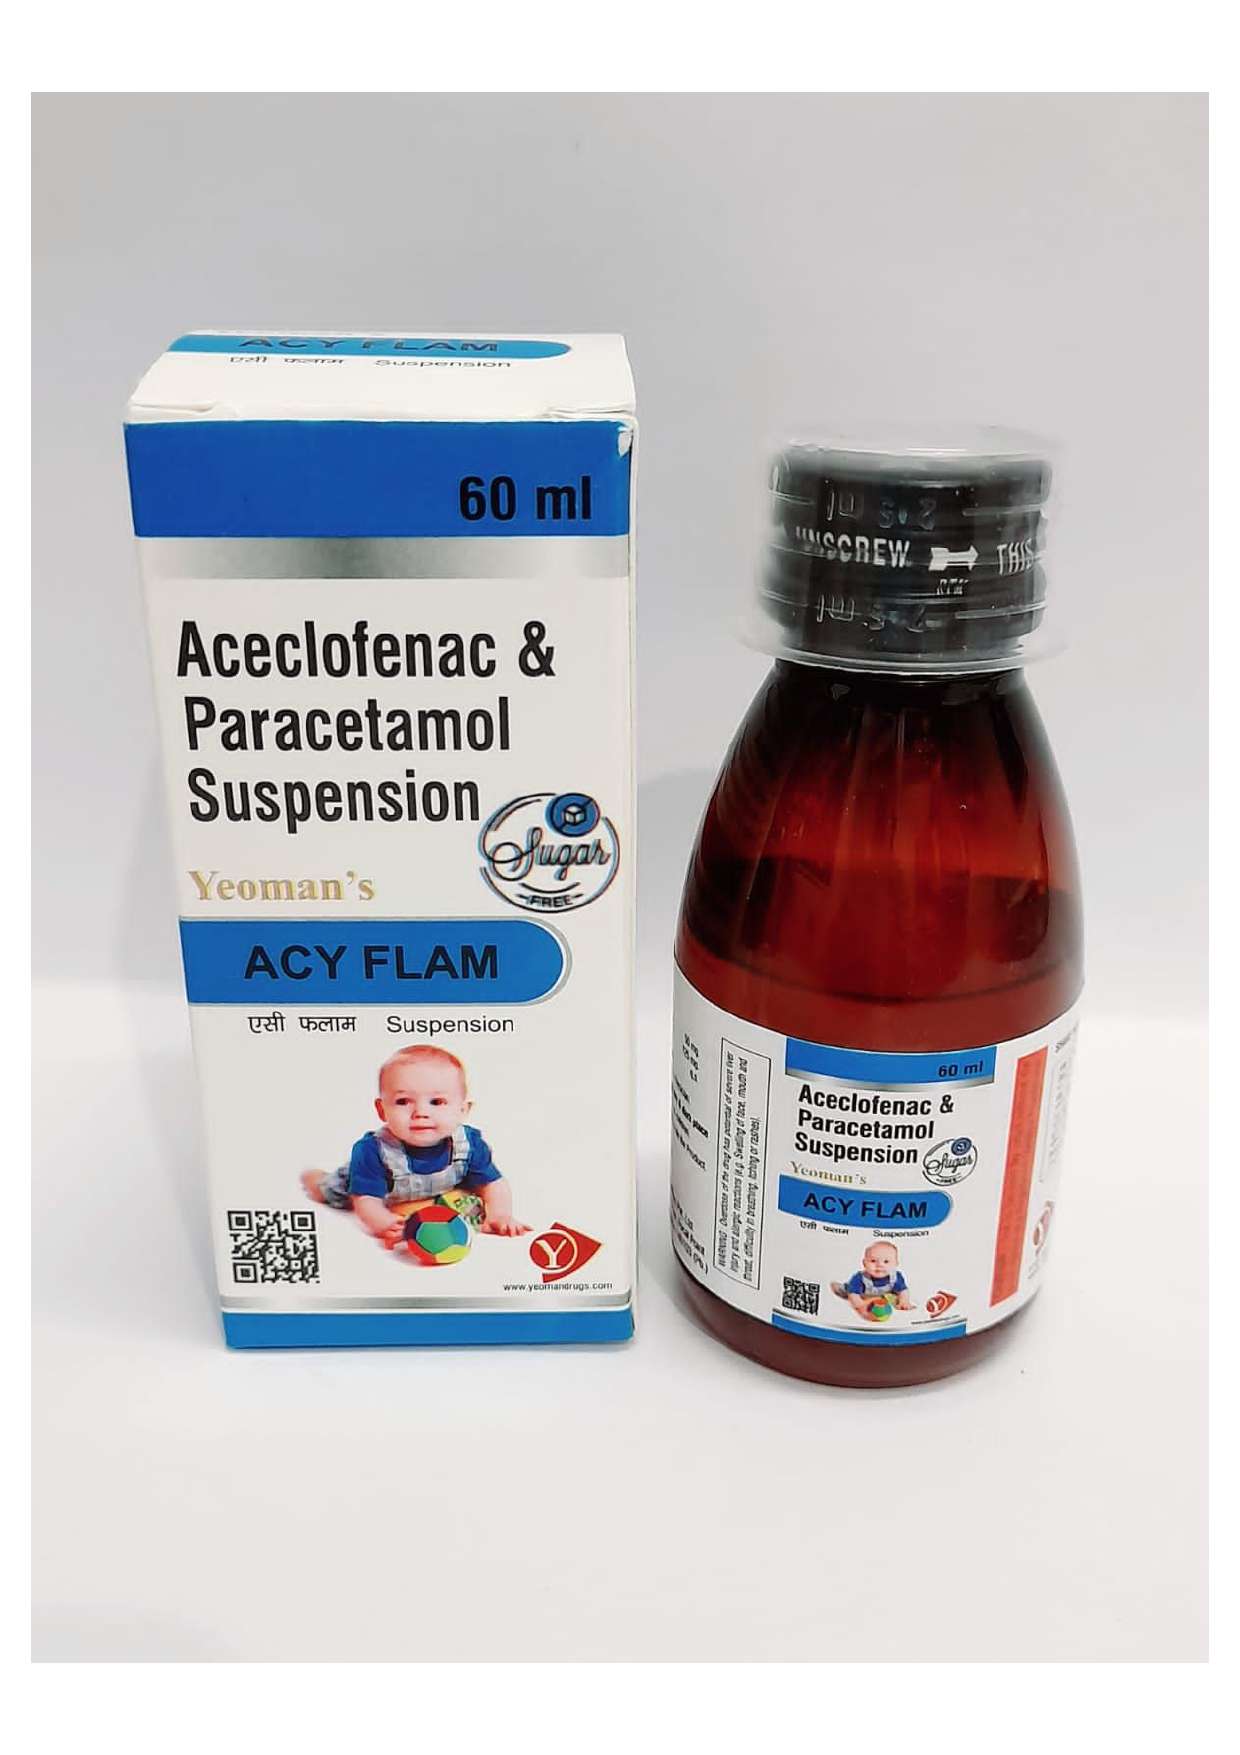 aceclofenac 50mg. + paracetamol 125mg.